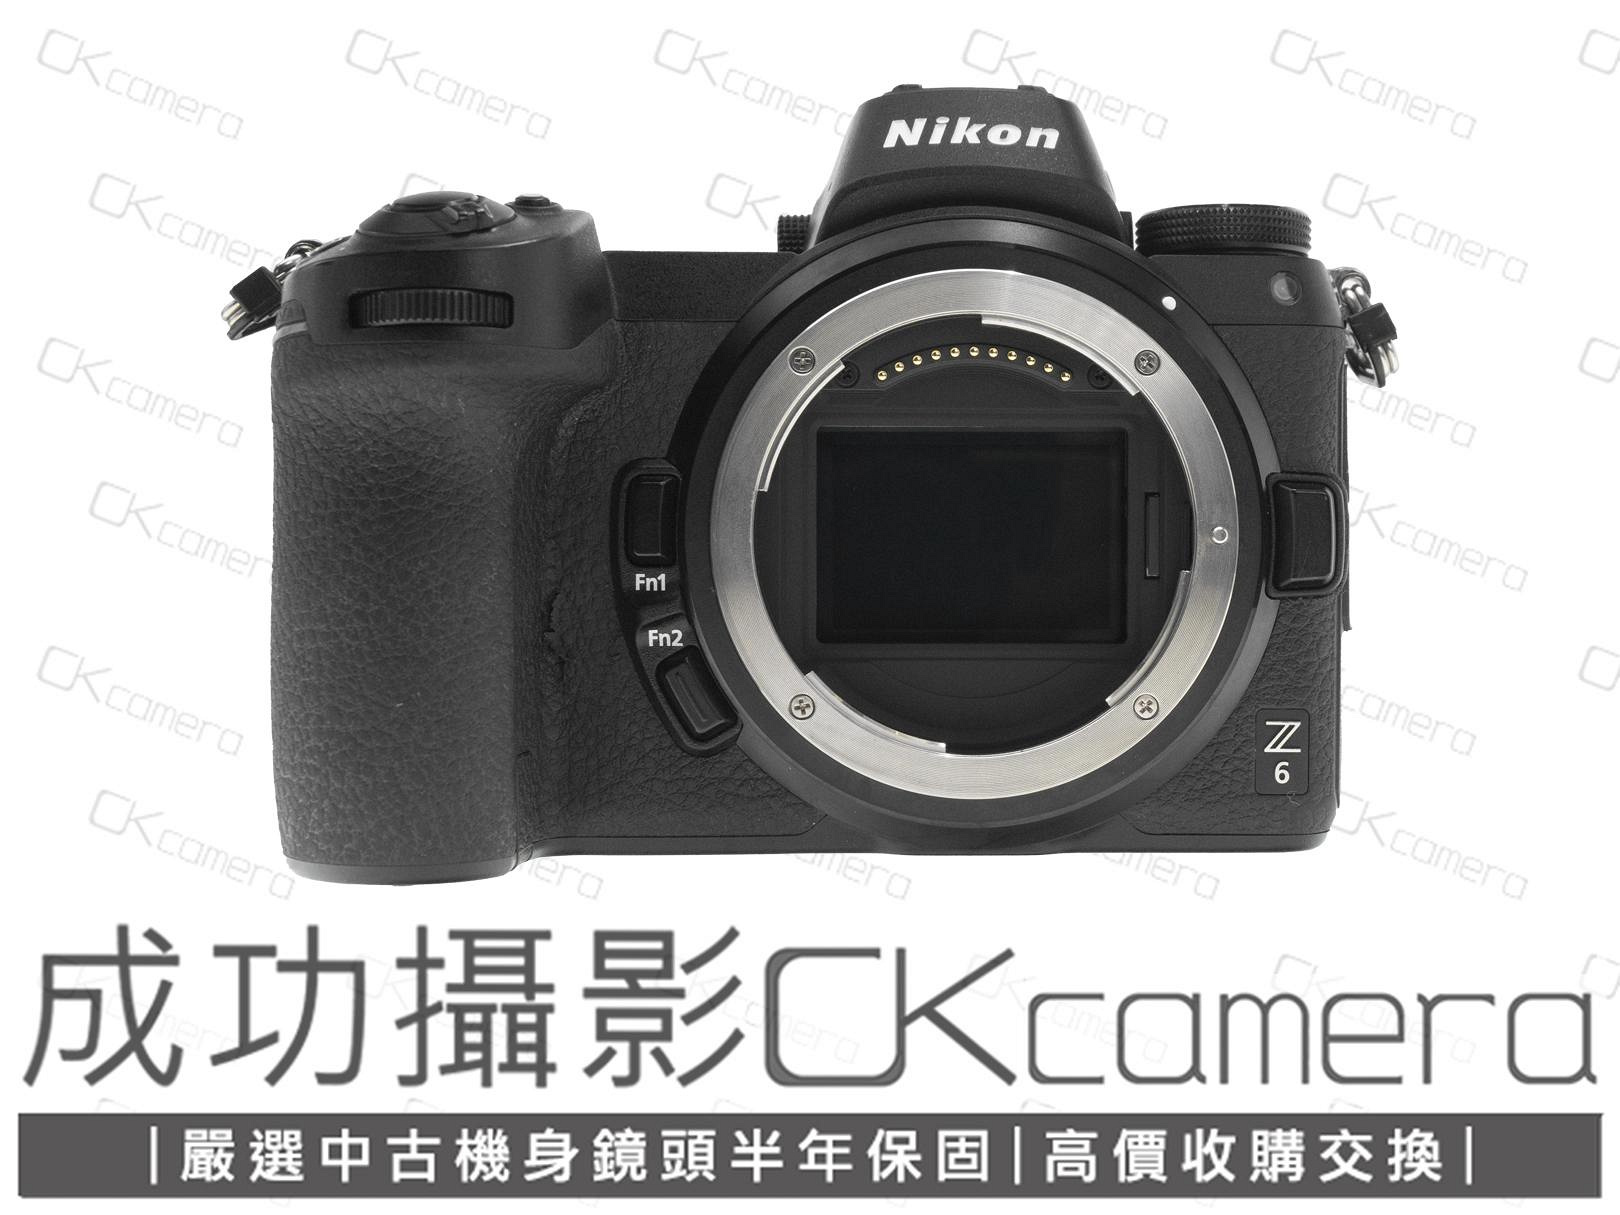 成功攝影 Nikon Z6 Body 中古二手 2400萬畫素 強悍全幅數位無反單眼相機 4K攝錄 五軸防震 保固半年 參考 Z5 Z7